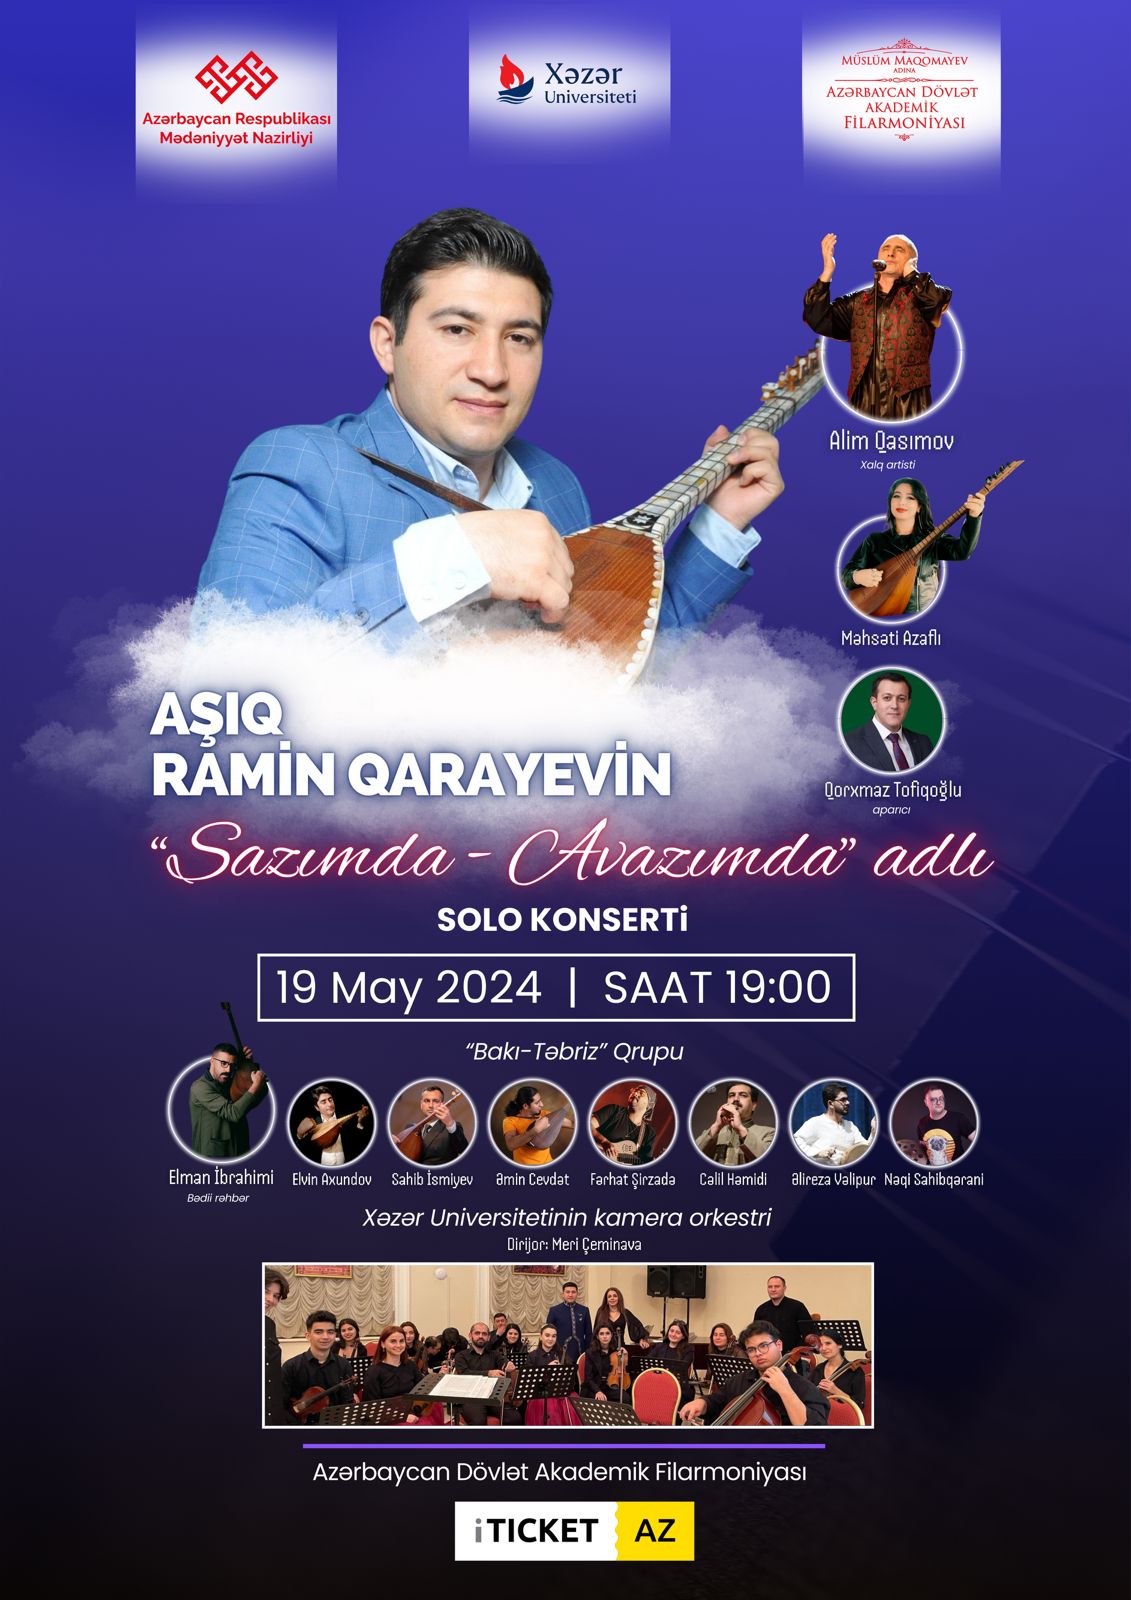 Aşıq Ramin Qarayev kamera orkestrinin müşayiəti ilə solo konsert verəcək